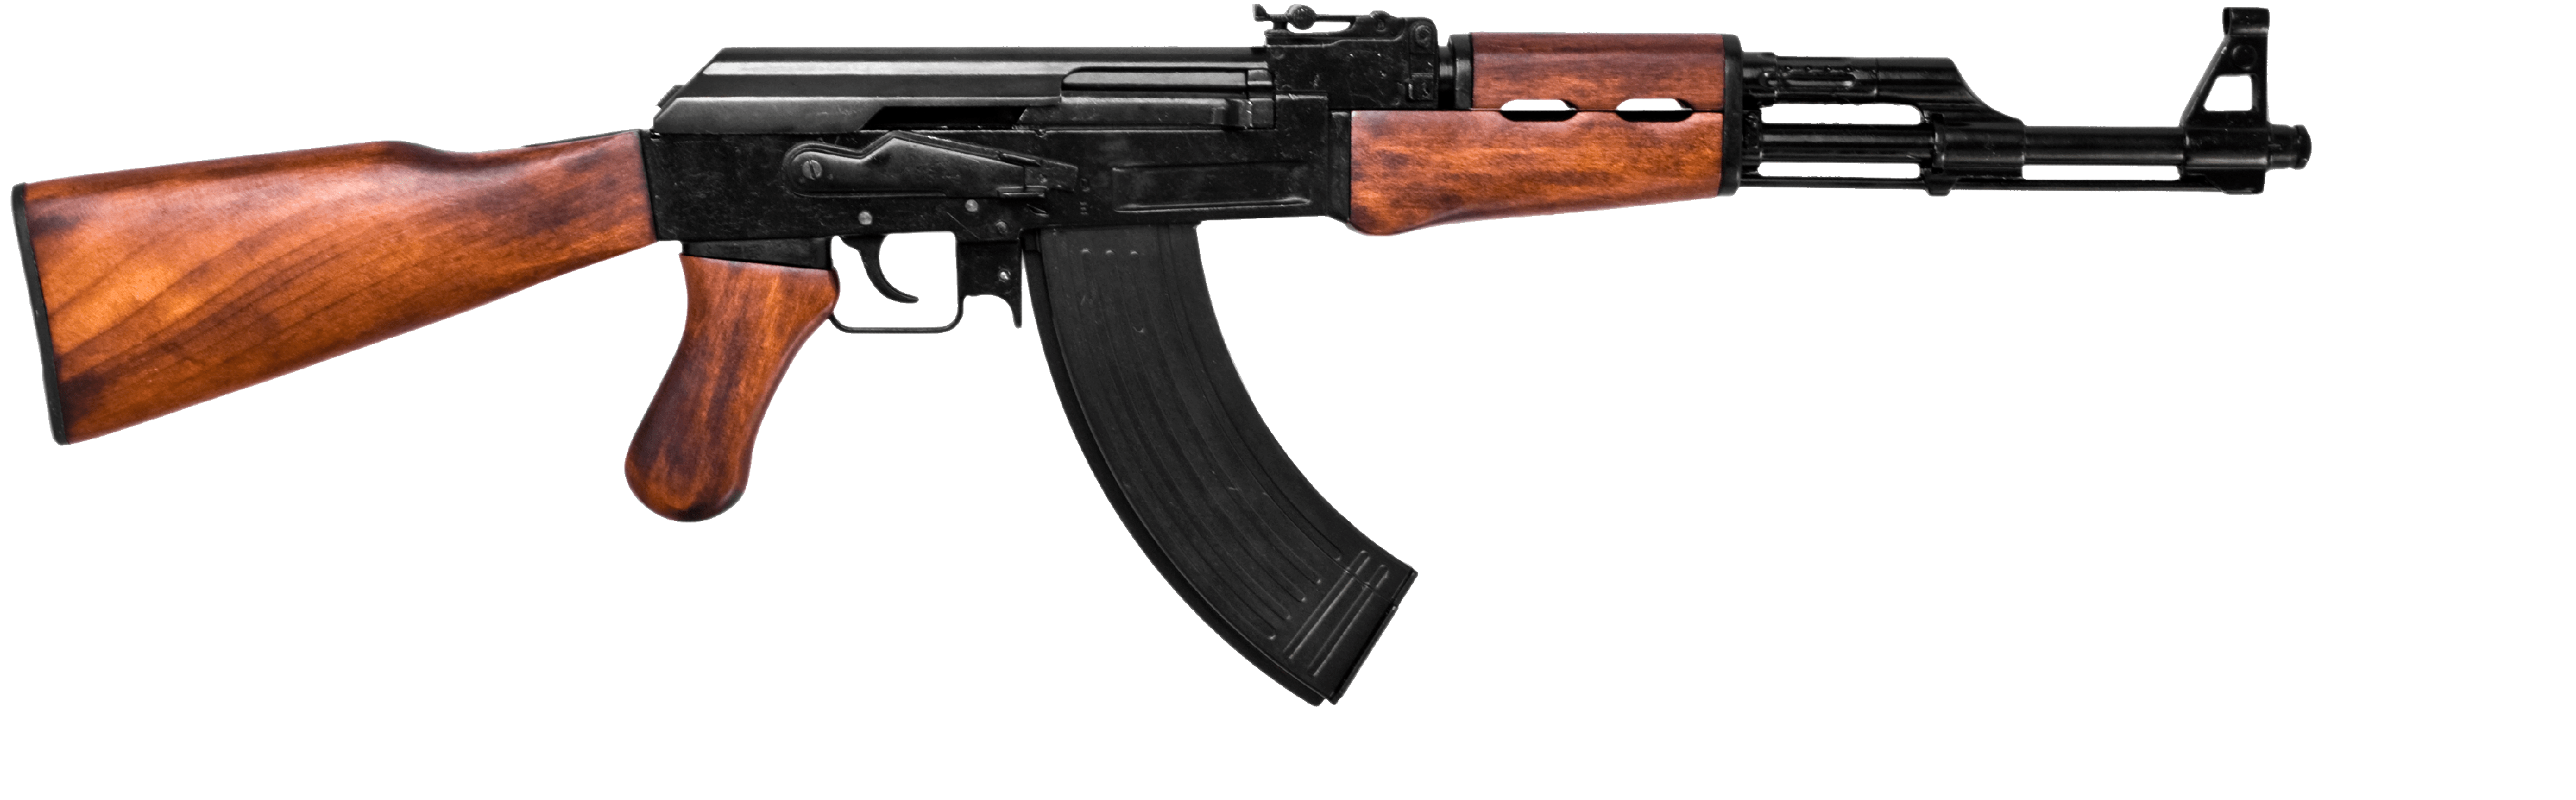 AK 47 PNG HD Photos